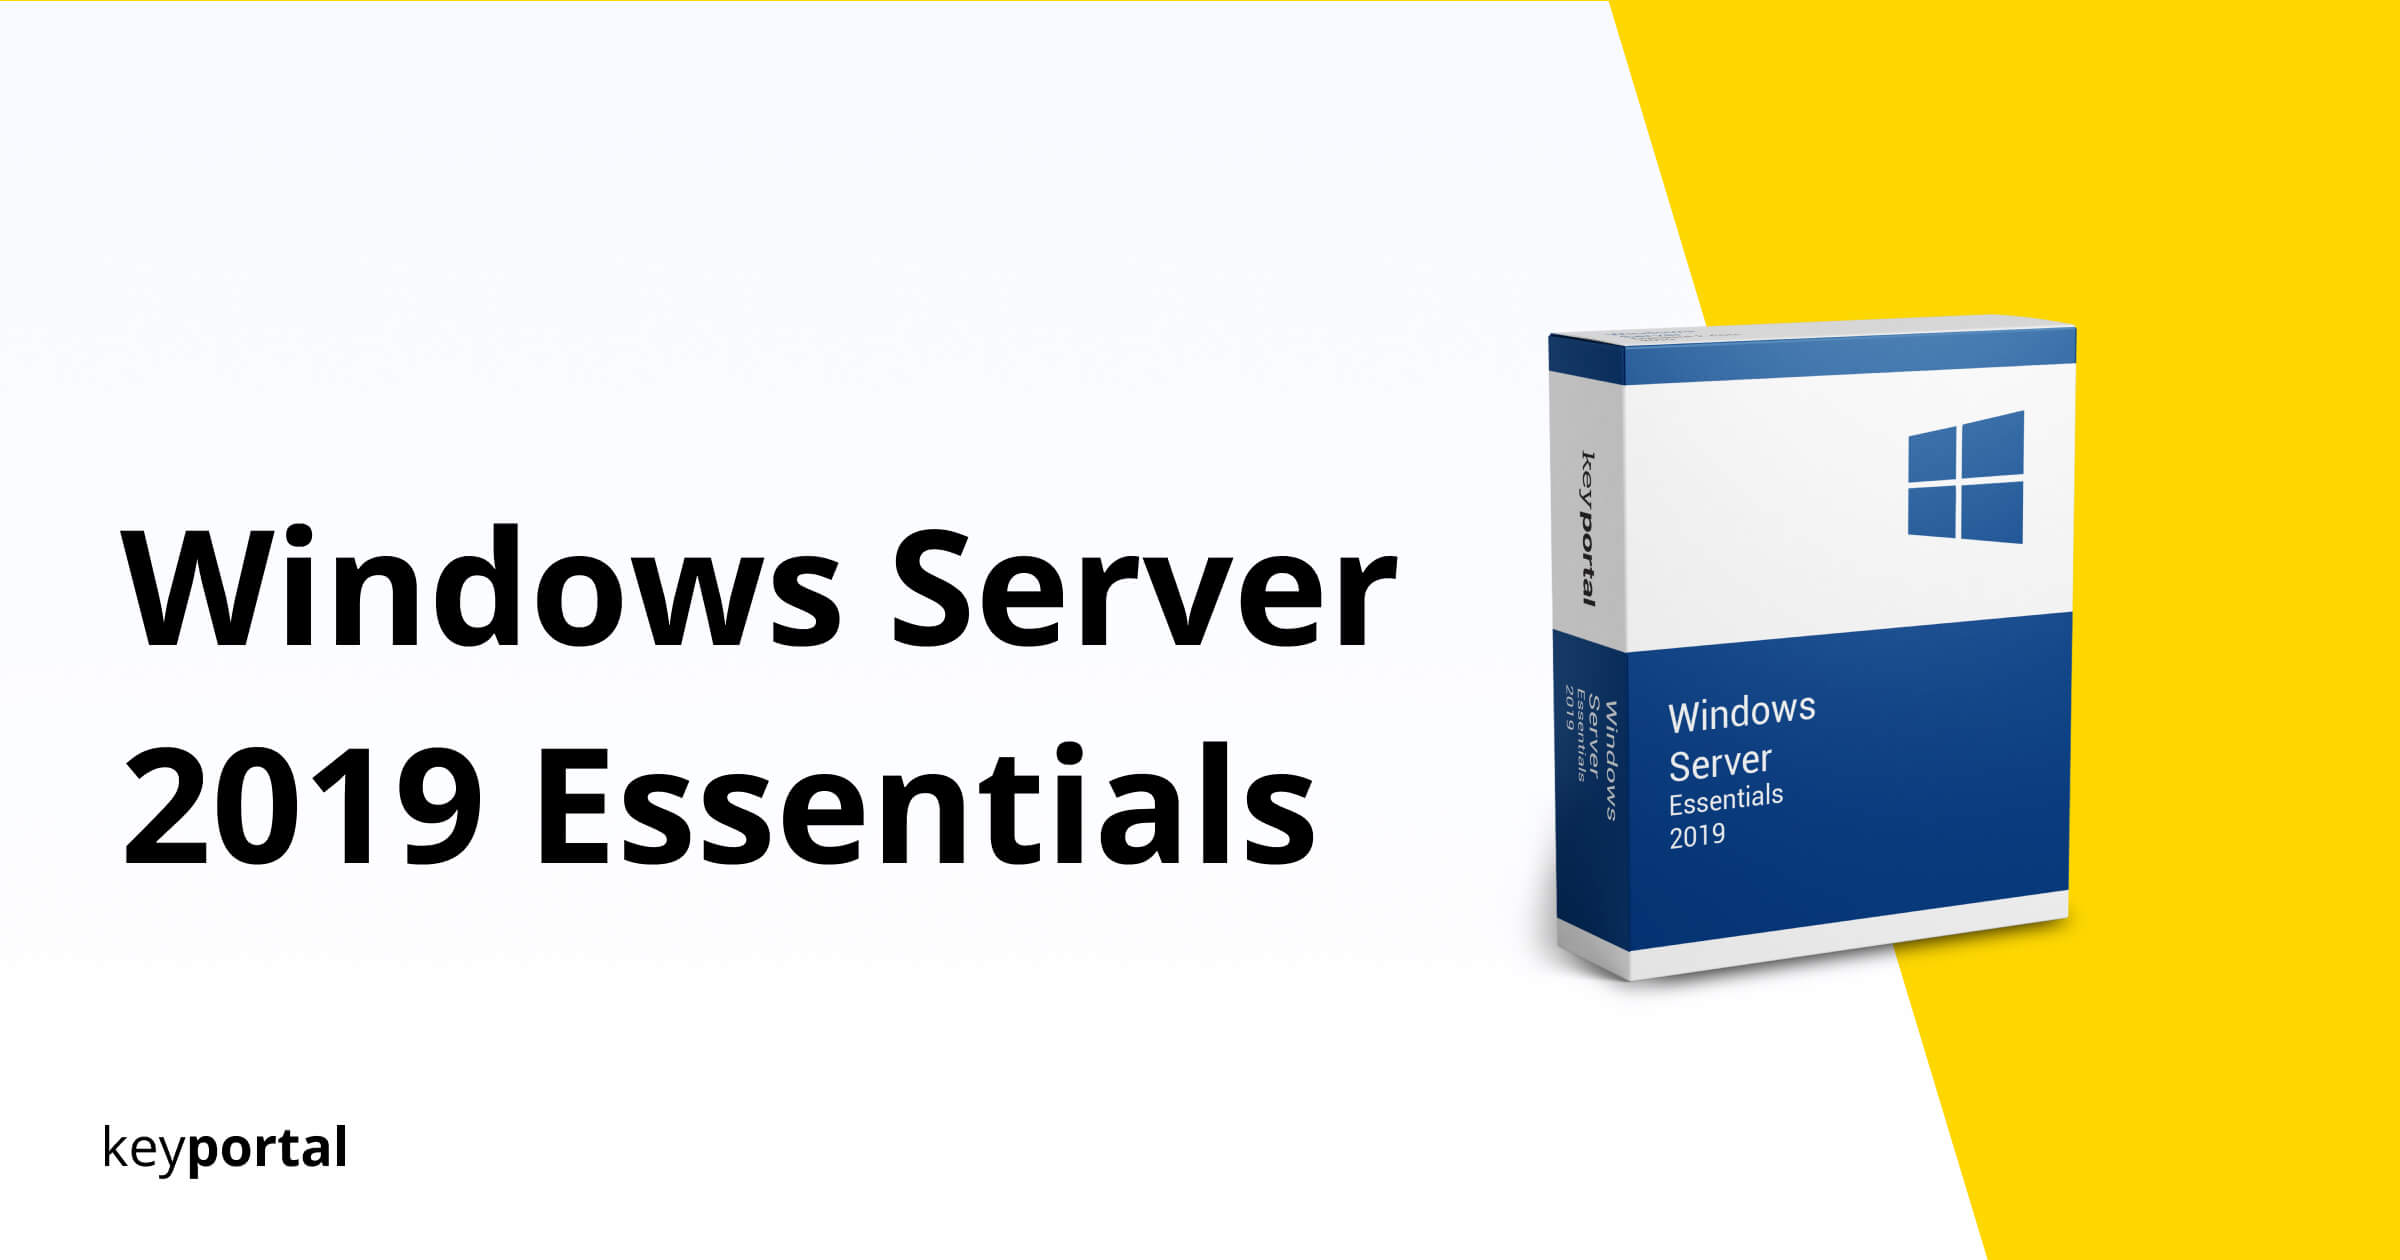 Windows Server 2019 Essentials Acheter Une Clé De Licence En Ligne Télécharger Windows 4184